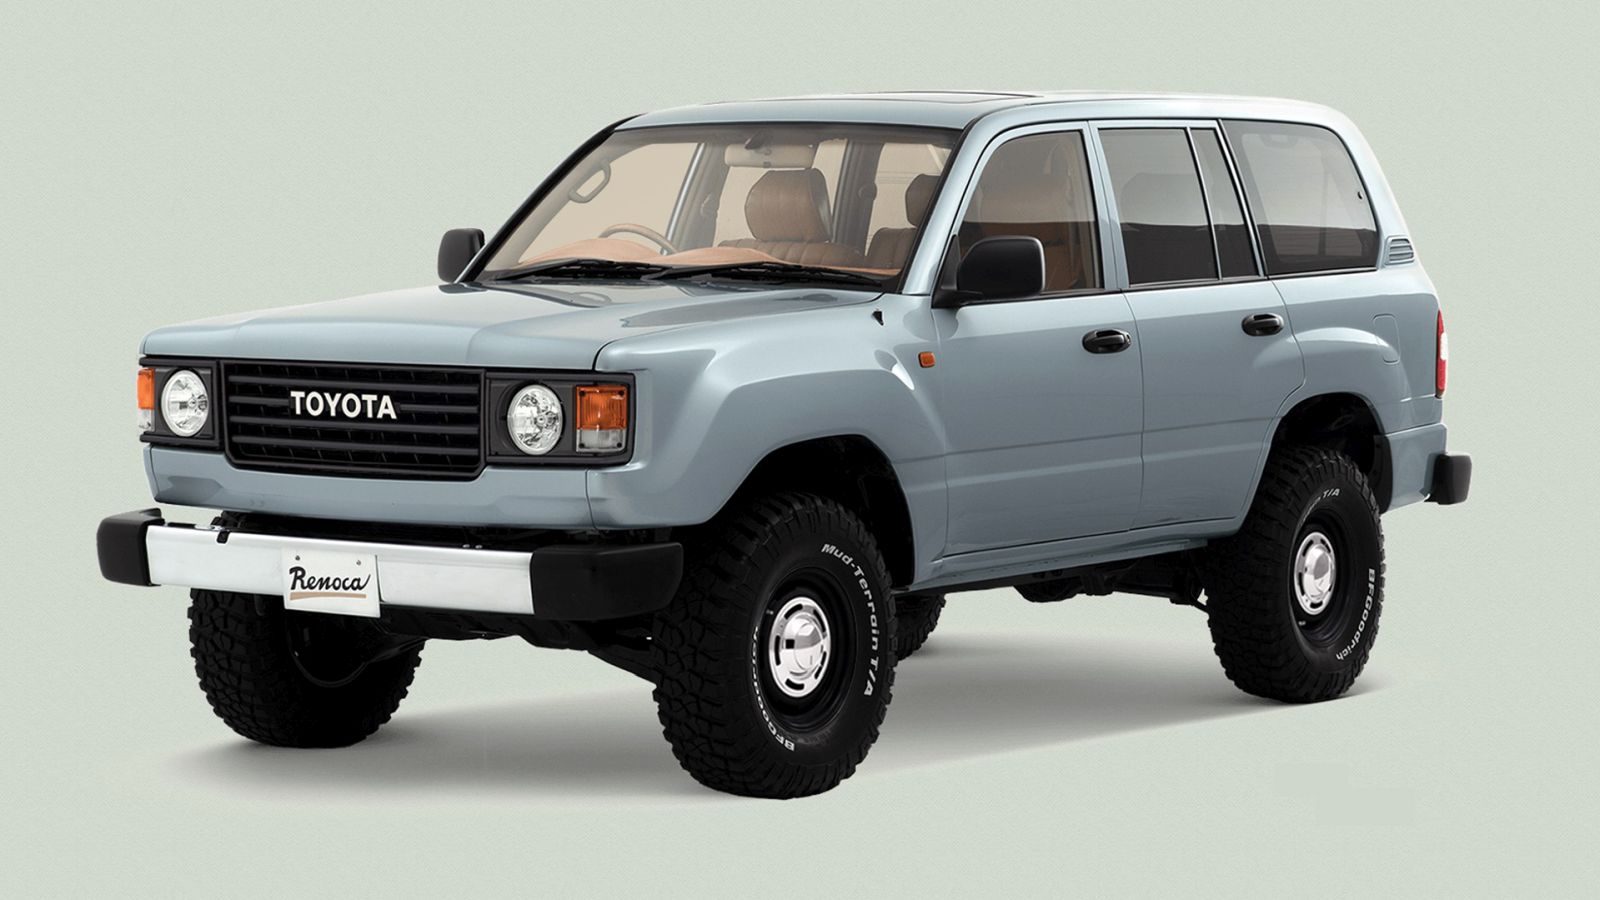 Renoca Toyota Land Cruiserek